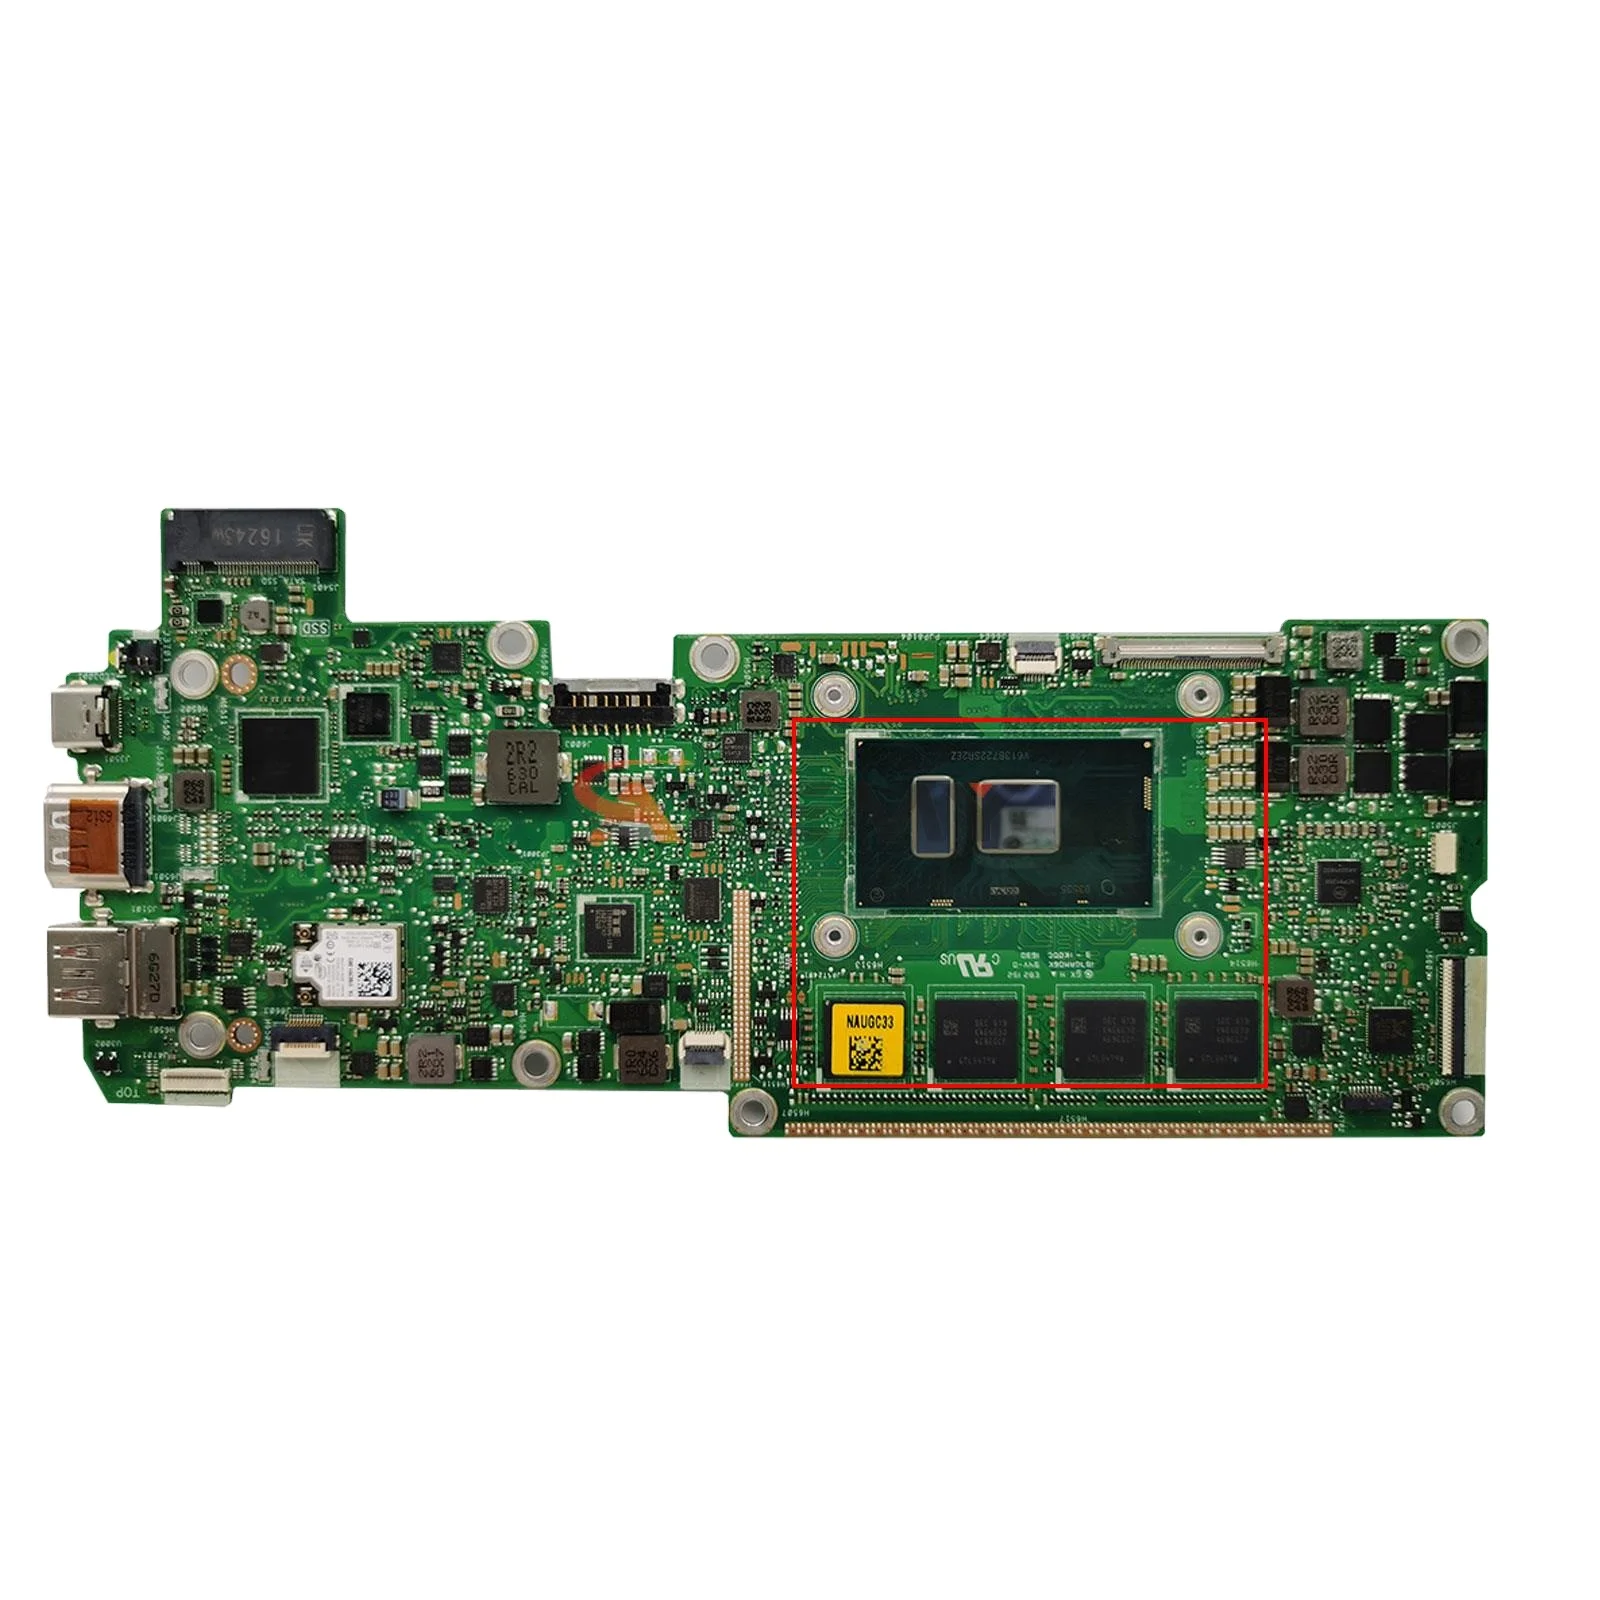 

T303U Mainboard For ASUS Transformer 3 Pro T303UA T303 Laptop Motherboard I3 I5 I7 6th Gen 4GB/8GB/16GB-RAM MAIN BOARD